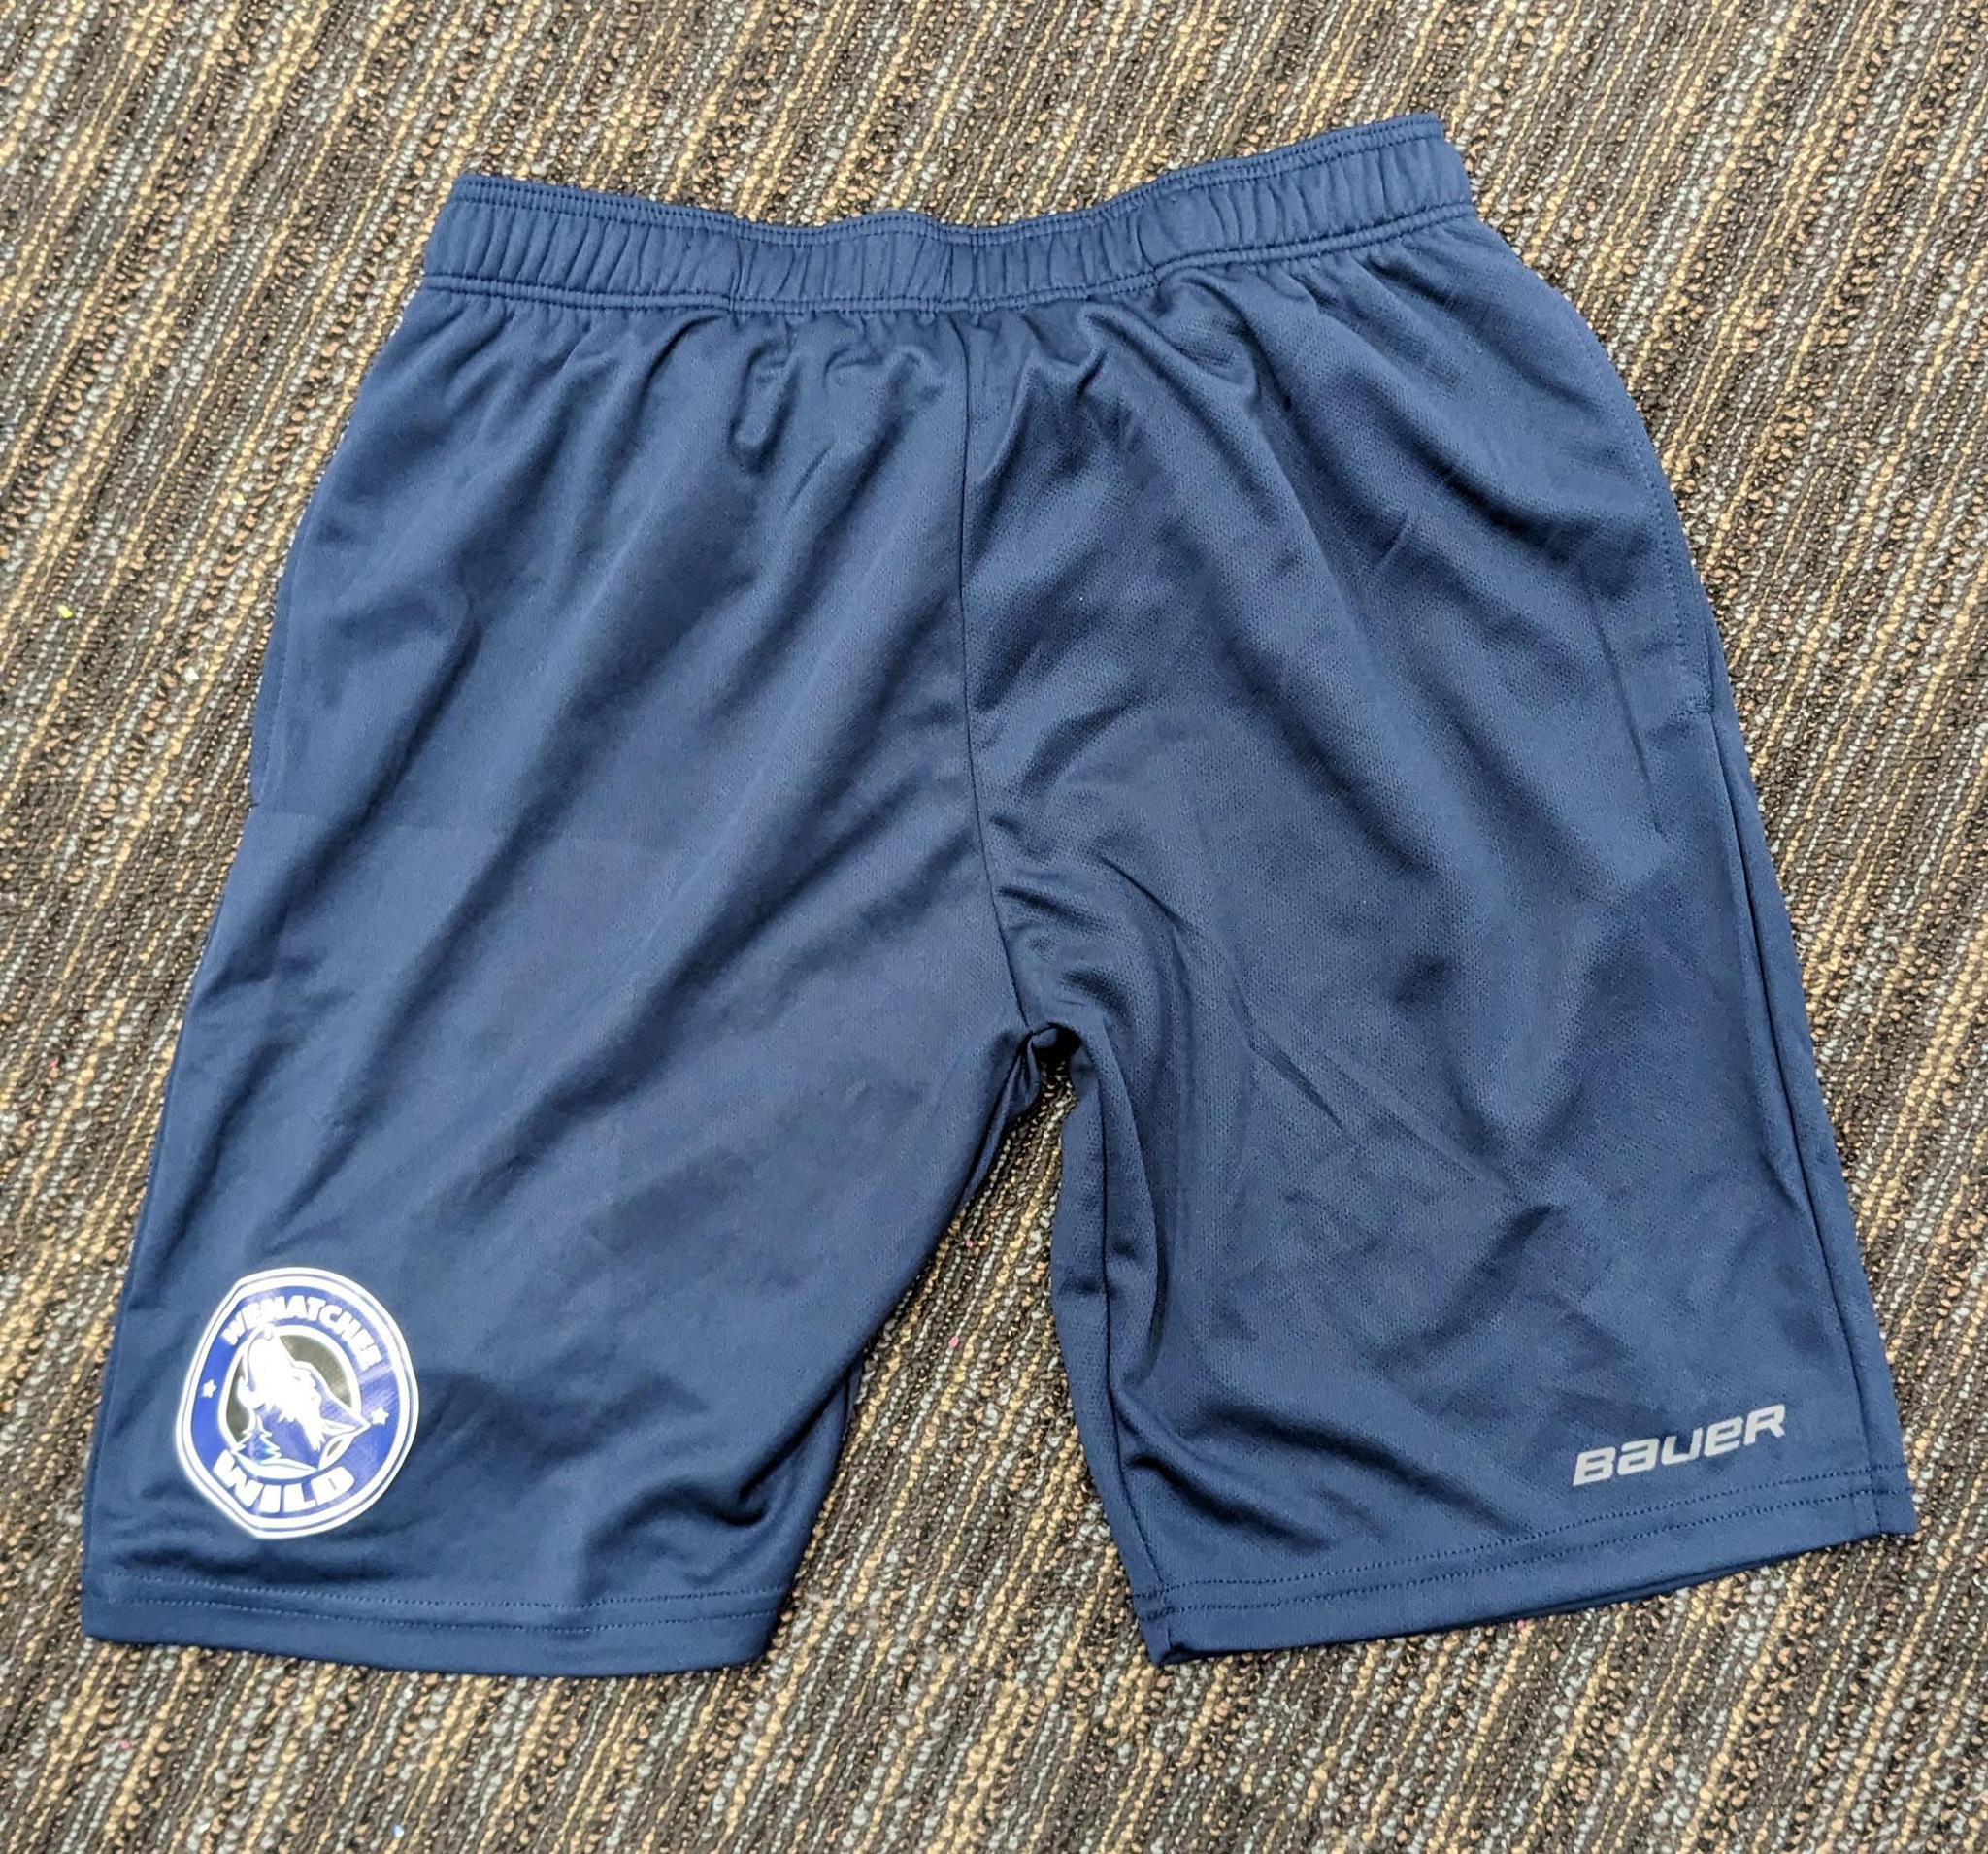 Bauer Gym Shorts - Navy